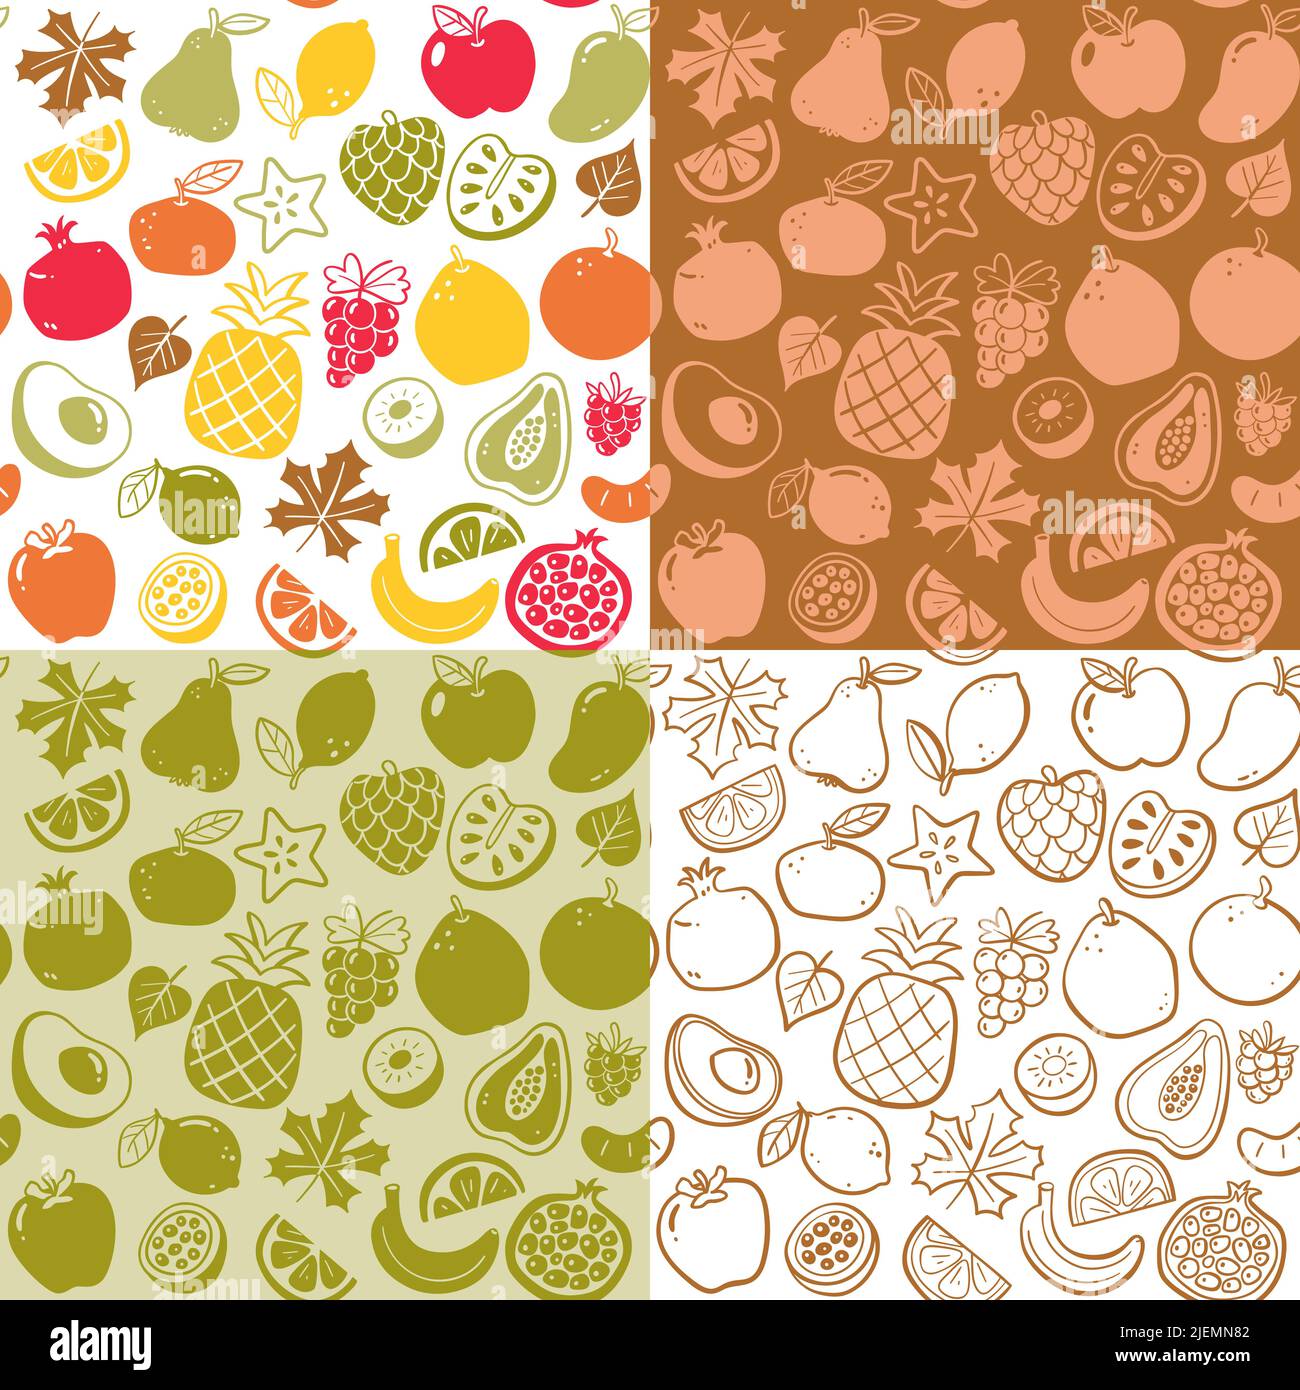 Nahtlose Musterkollektion mit Früchten der Herbstsaison. Isolierte Früchte auf weißem Hintergrund. Farbenfrohe, flache Silhouette und Doodle-Style. Vektorgrafiken Stock Vektor